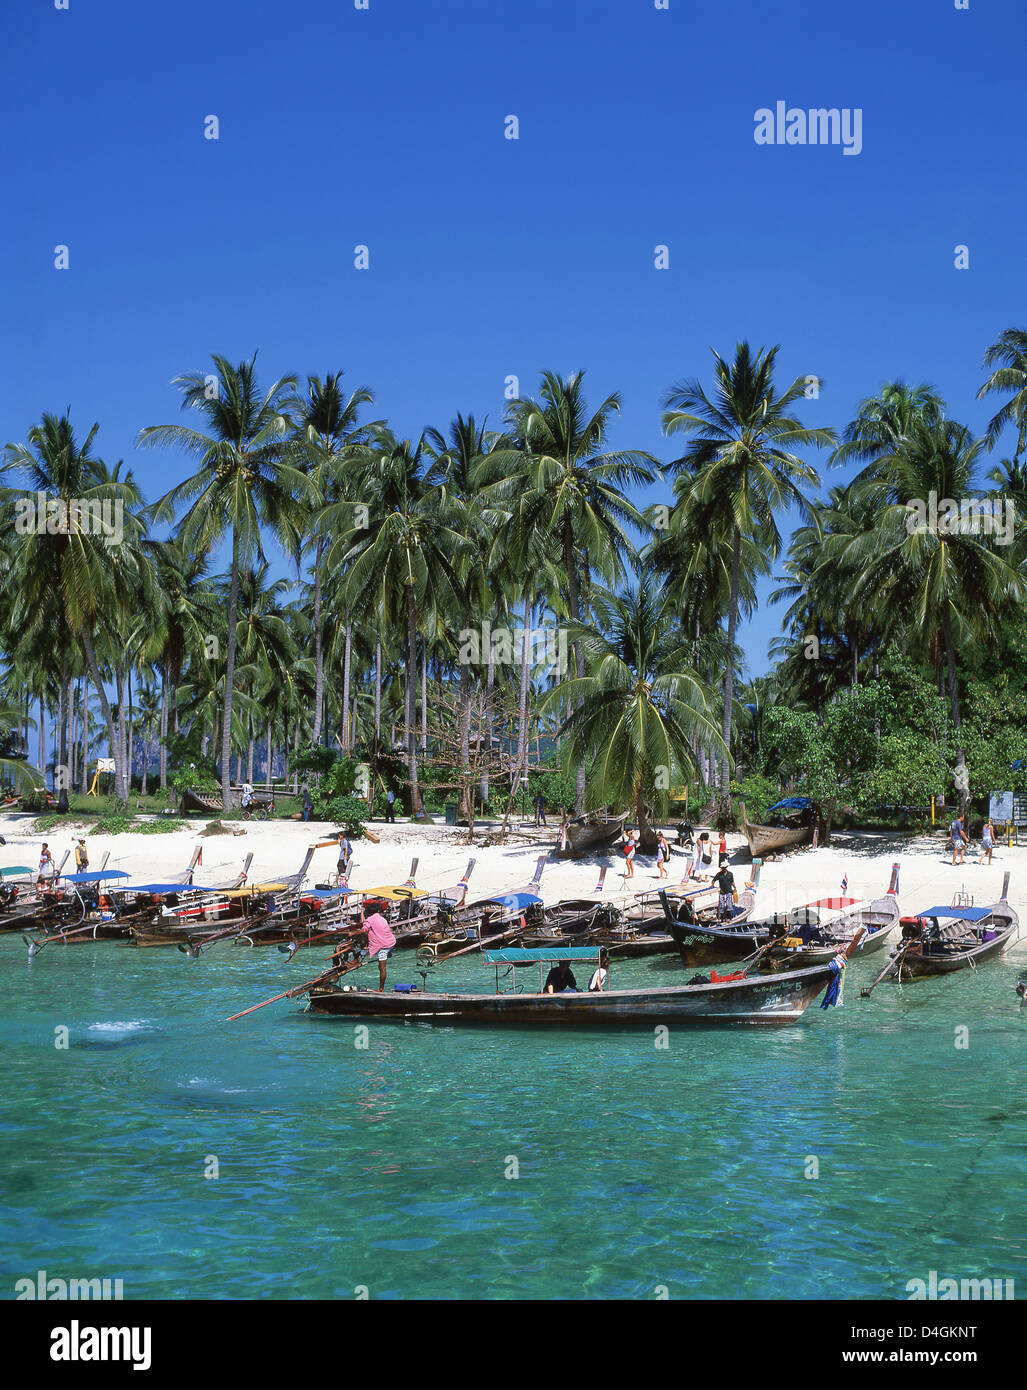 La baie de Ton Sai beach, Koh Phi Phi Don, Phi Phi Island, province de Krabi, Thaïlande Banque D'Images